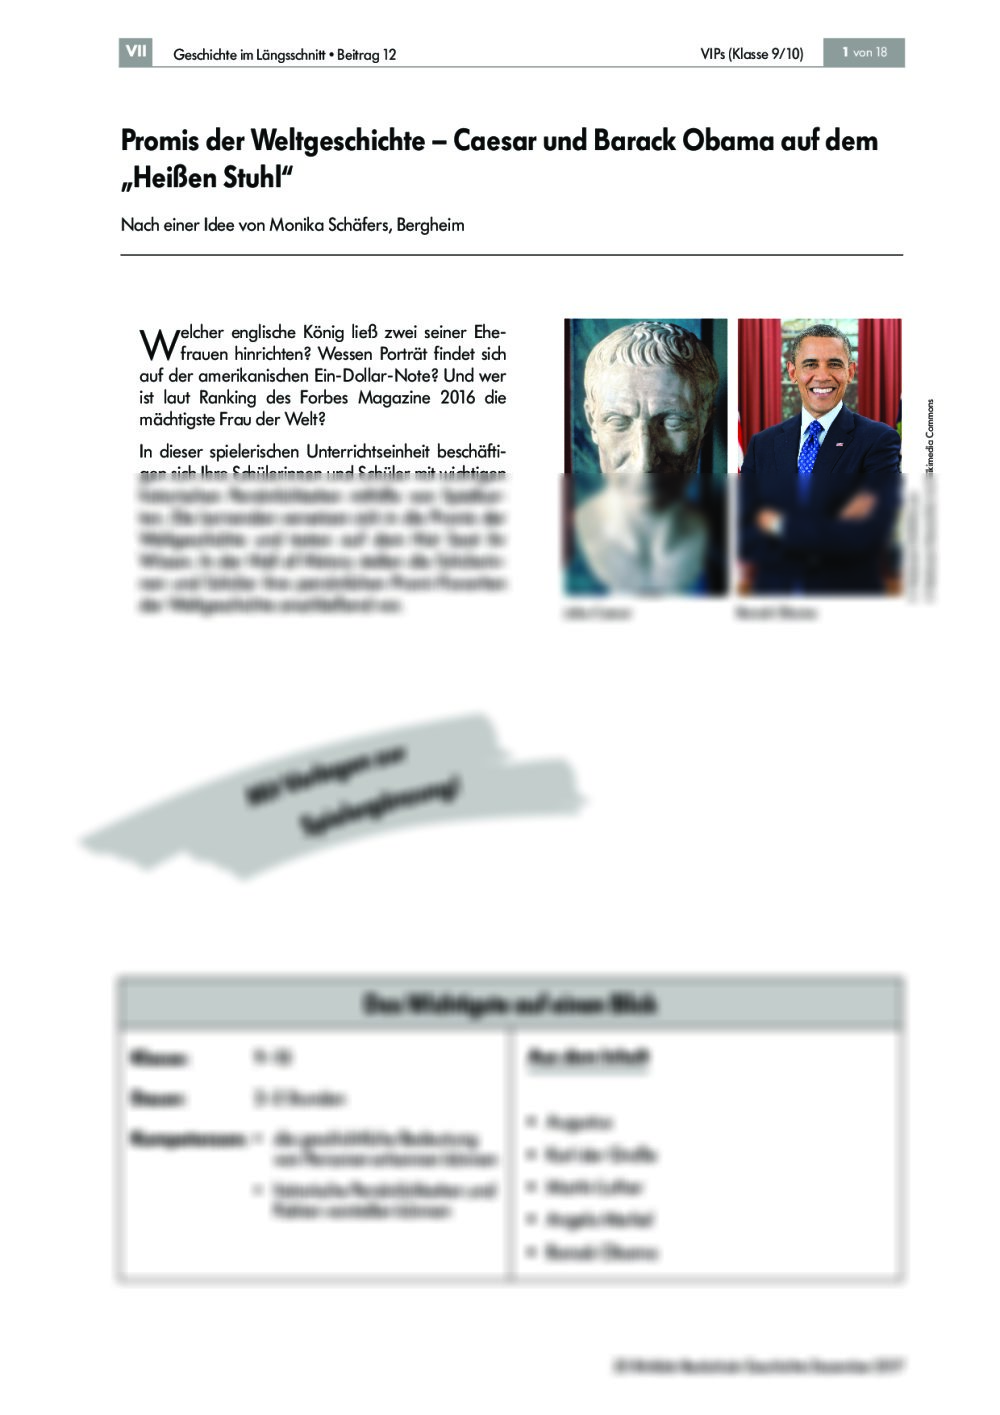 Caesar und Barack Obama auf dem „Heißen Stuhl“ - Seite 1